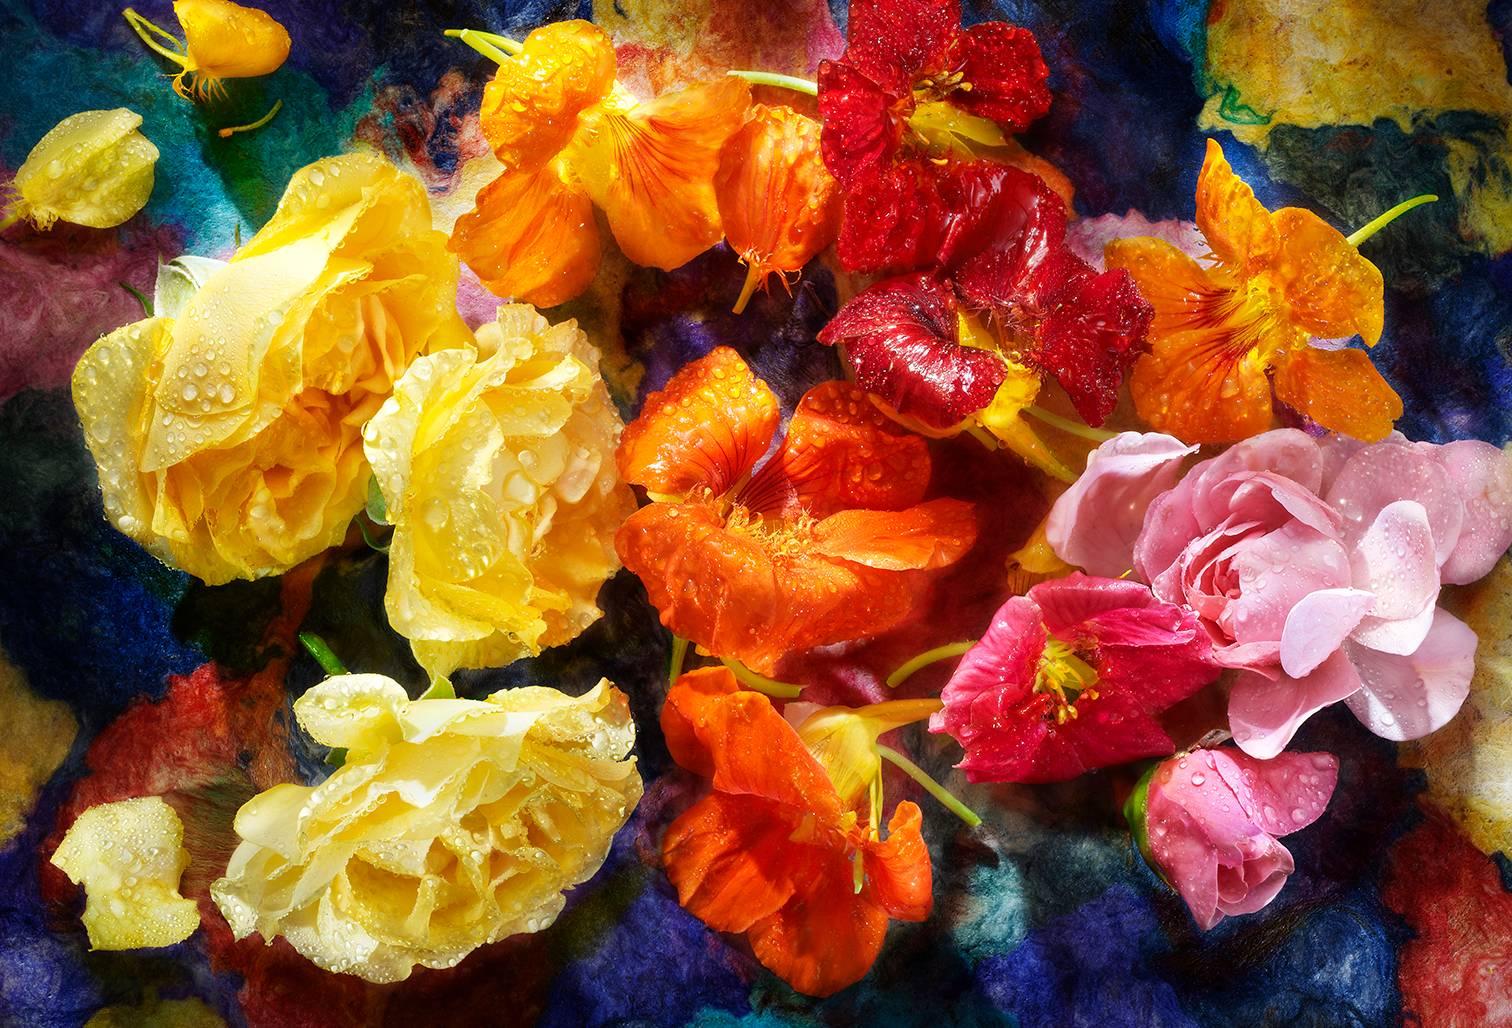 David Bishop Color Photograph - Nasturtium and Roses